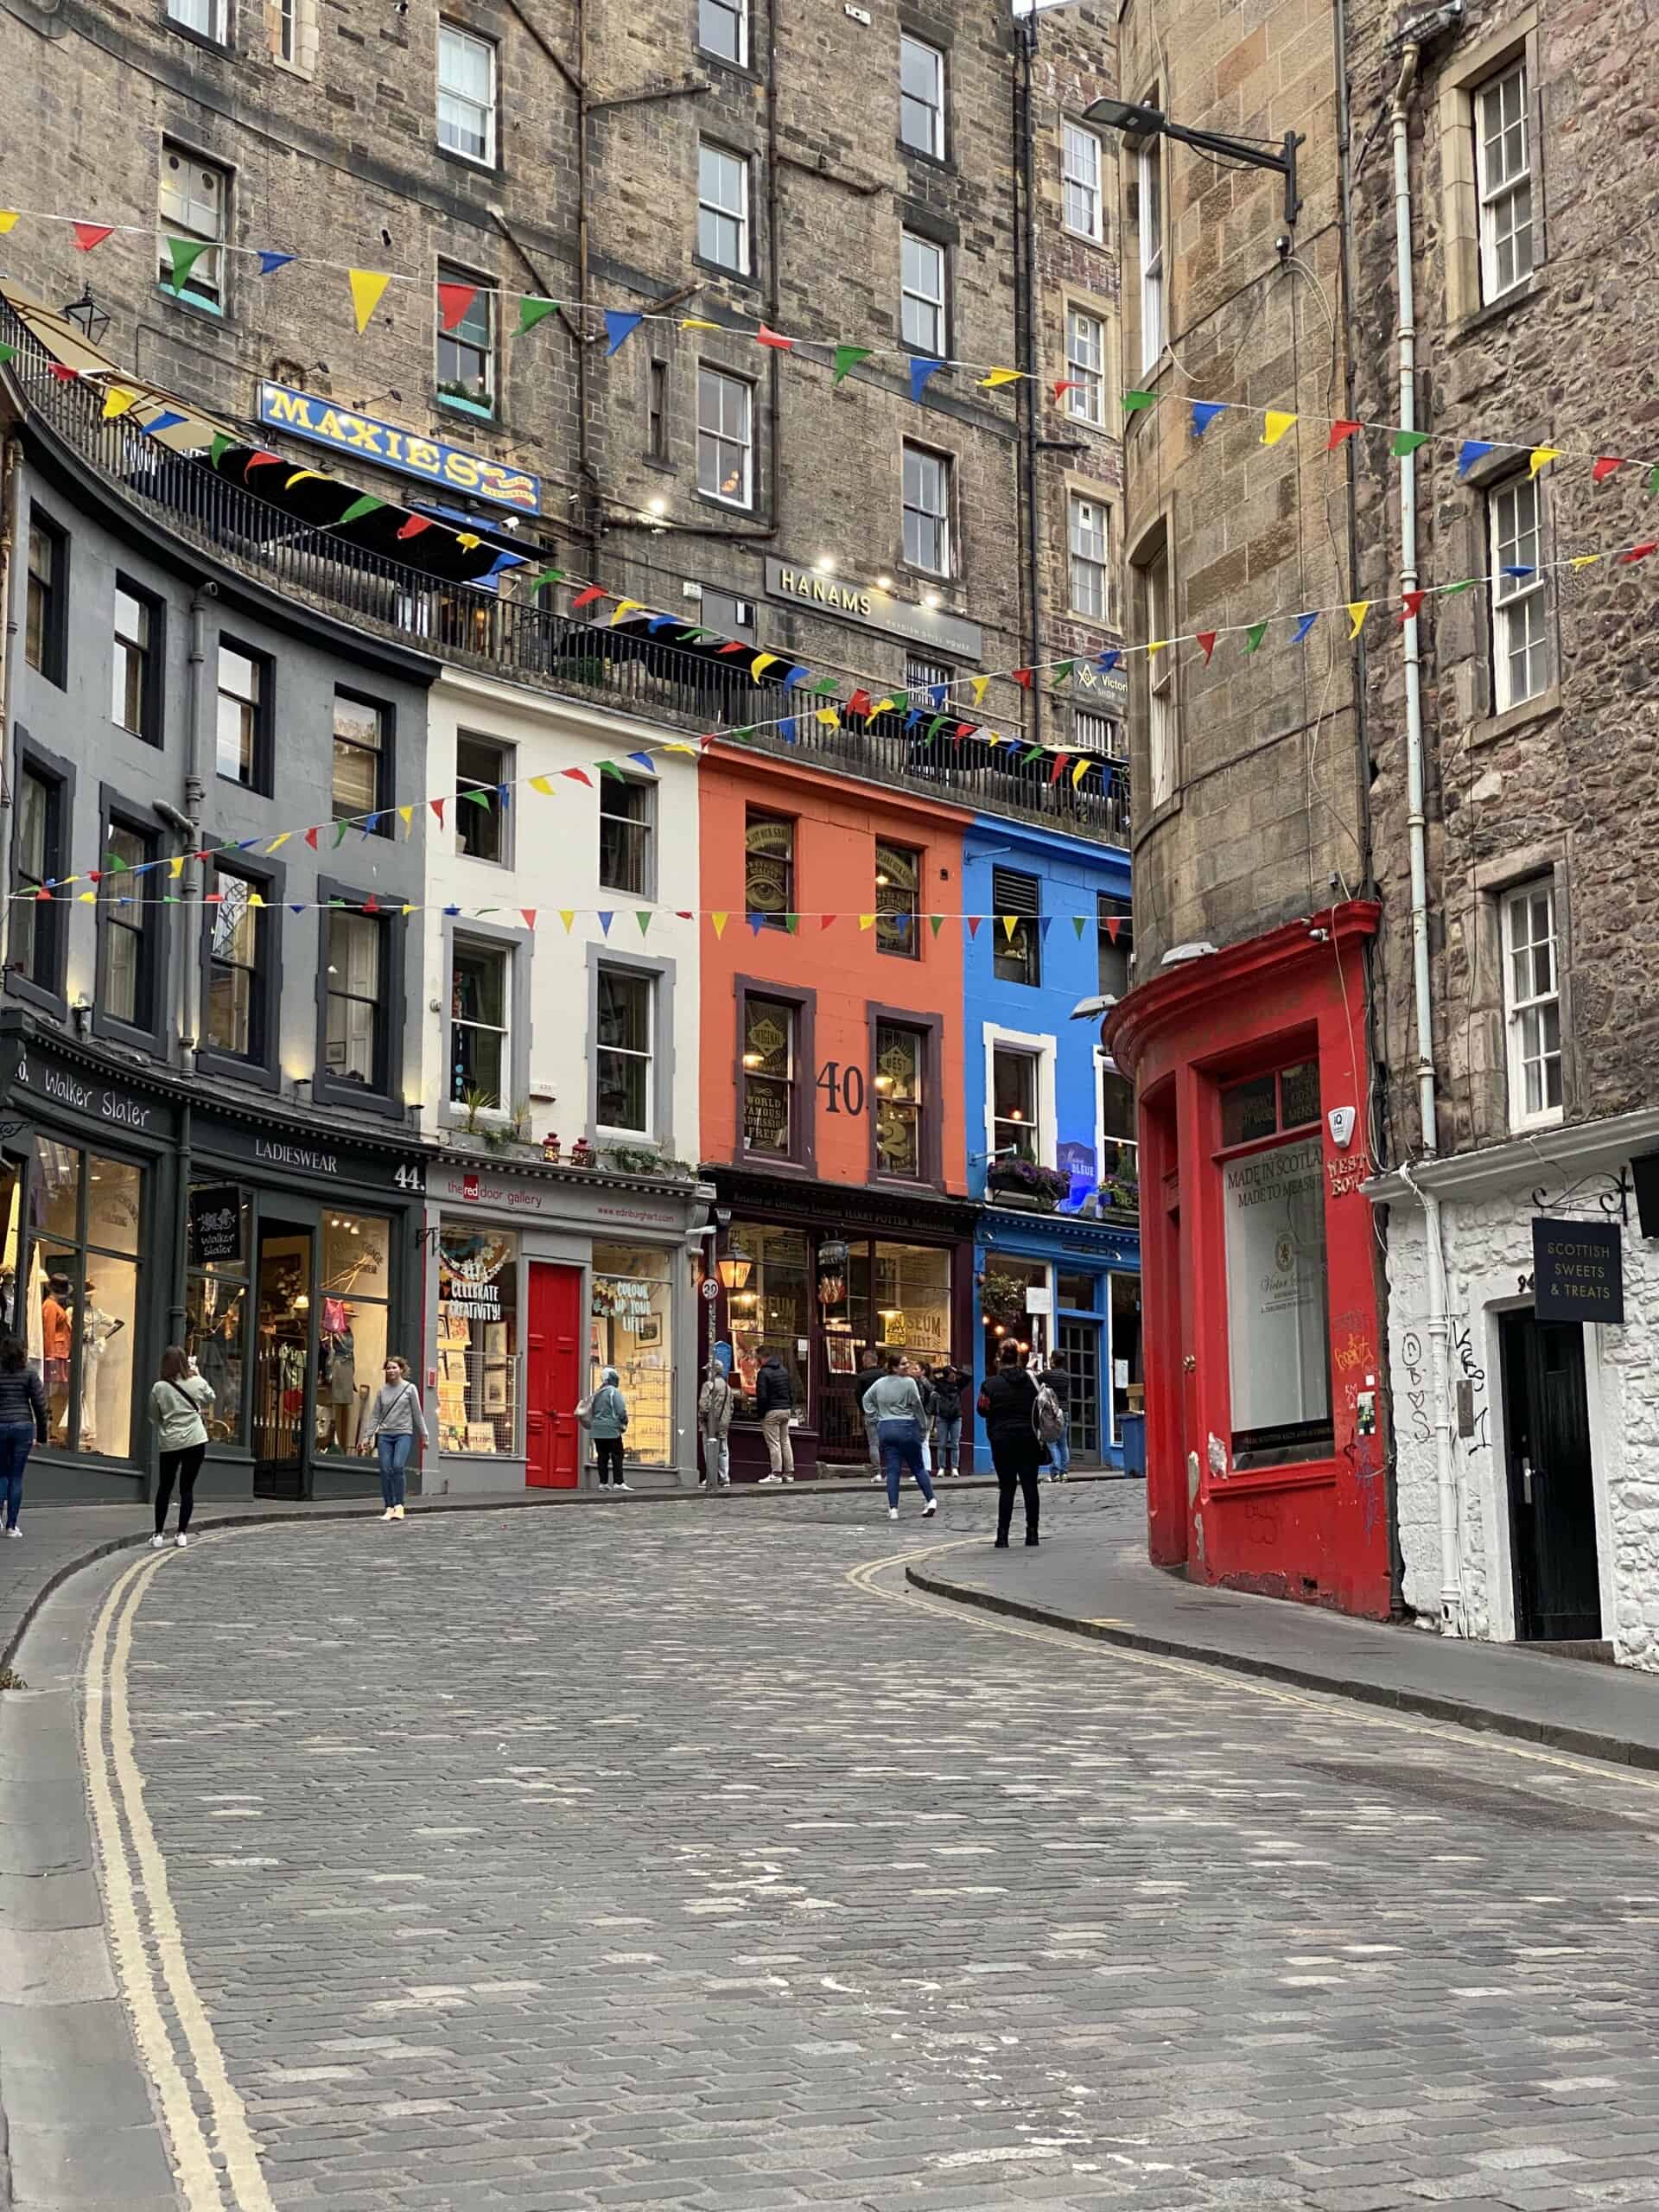 A colorful street in Edinburgh.